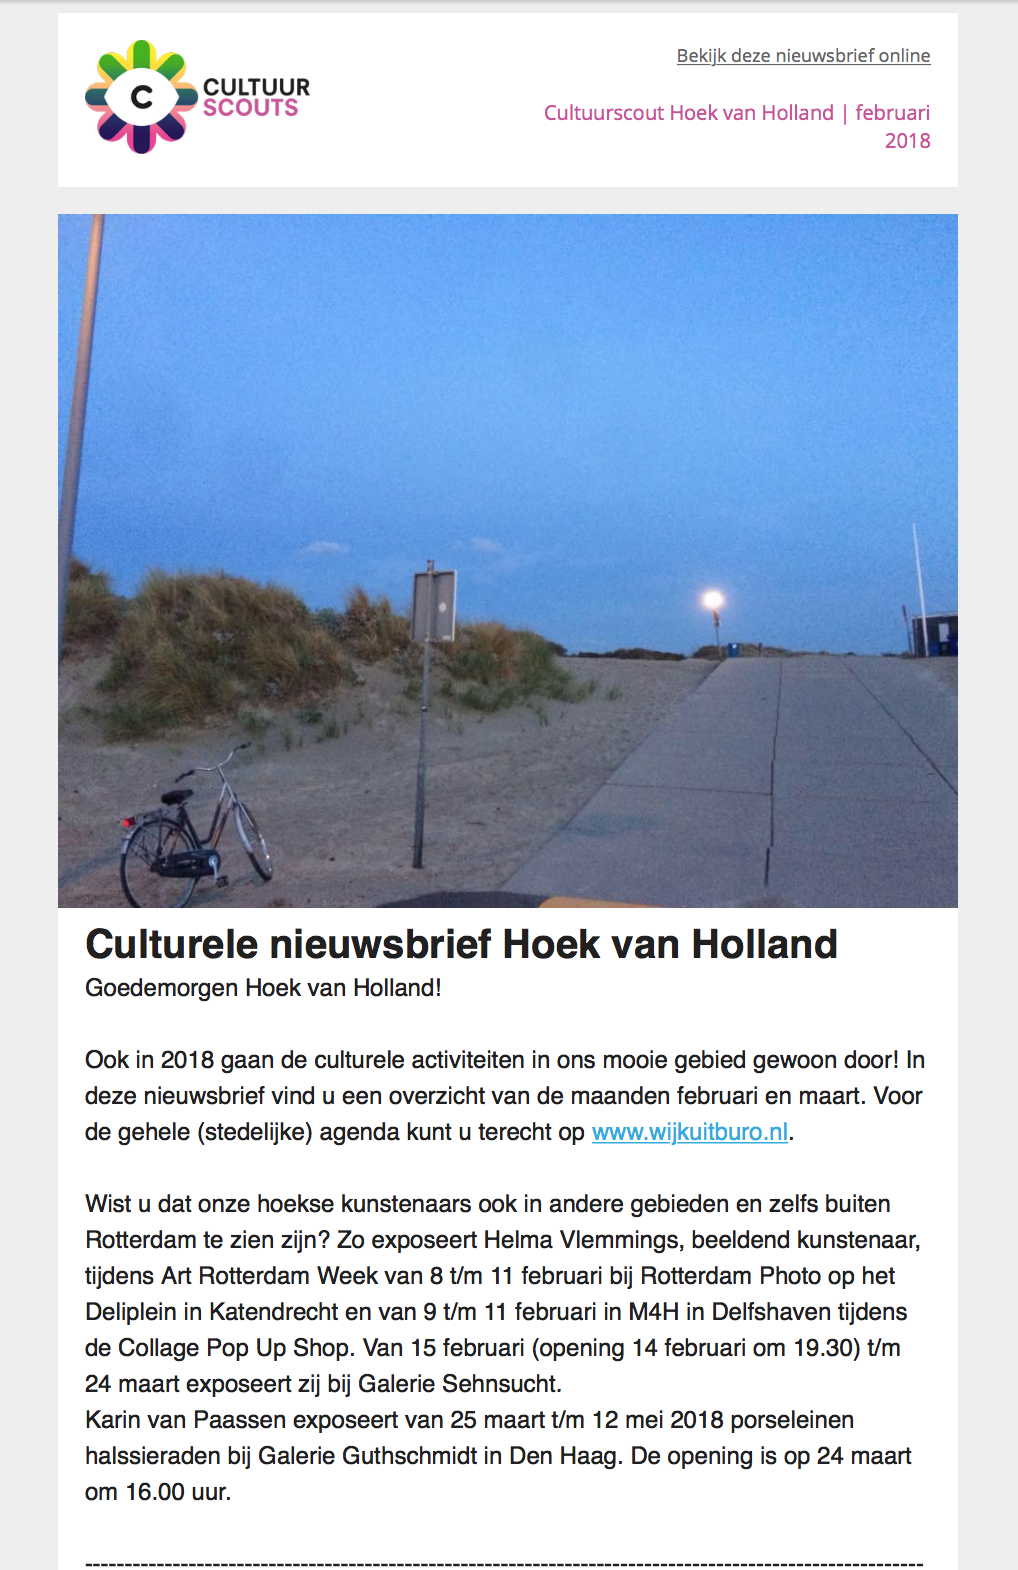 Culturele Nieuwsbrief van Hoek van Holland februari-maart 2018